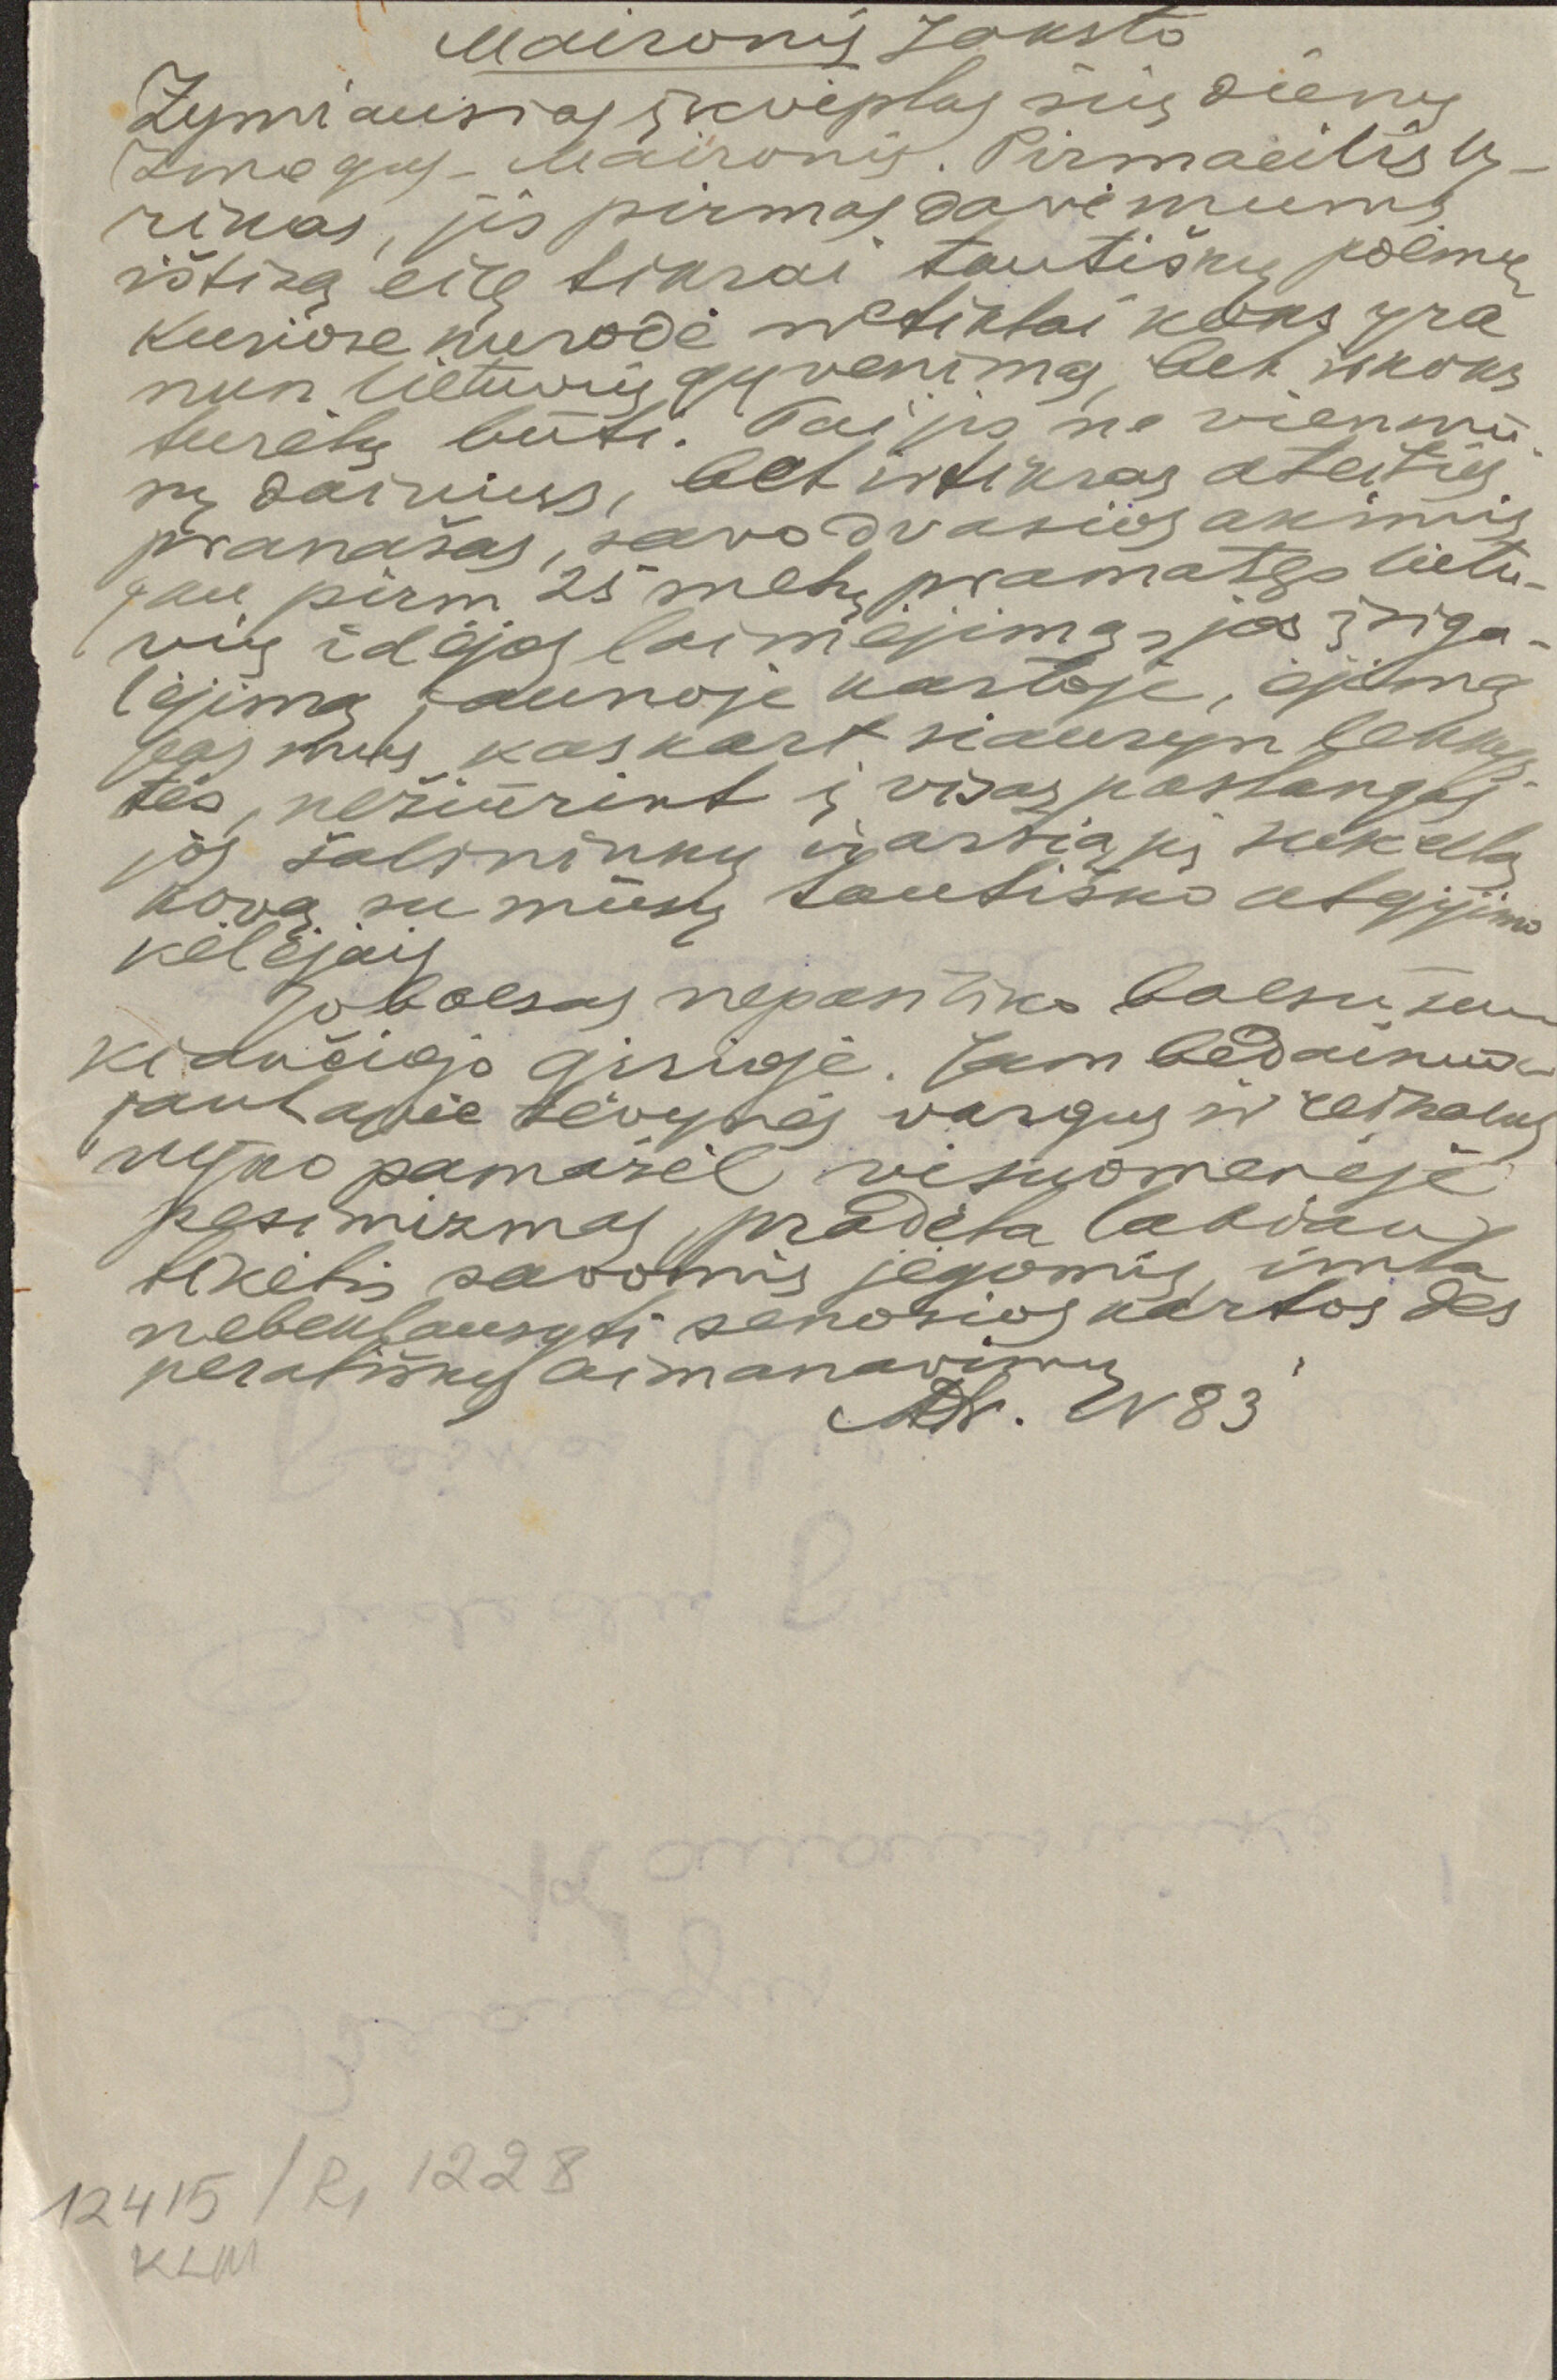 Vaižganto paskaitų rankraštis, analizuojama Maironio kūryba. Apie 1913–1922 m. MLLM 12415